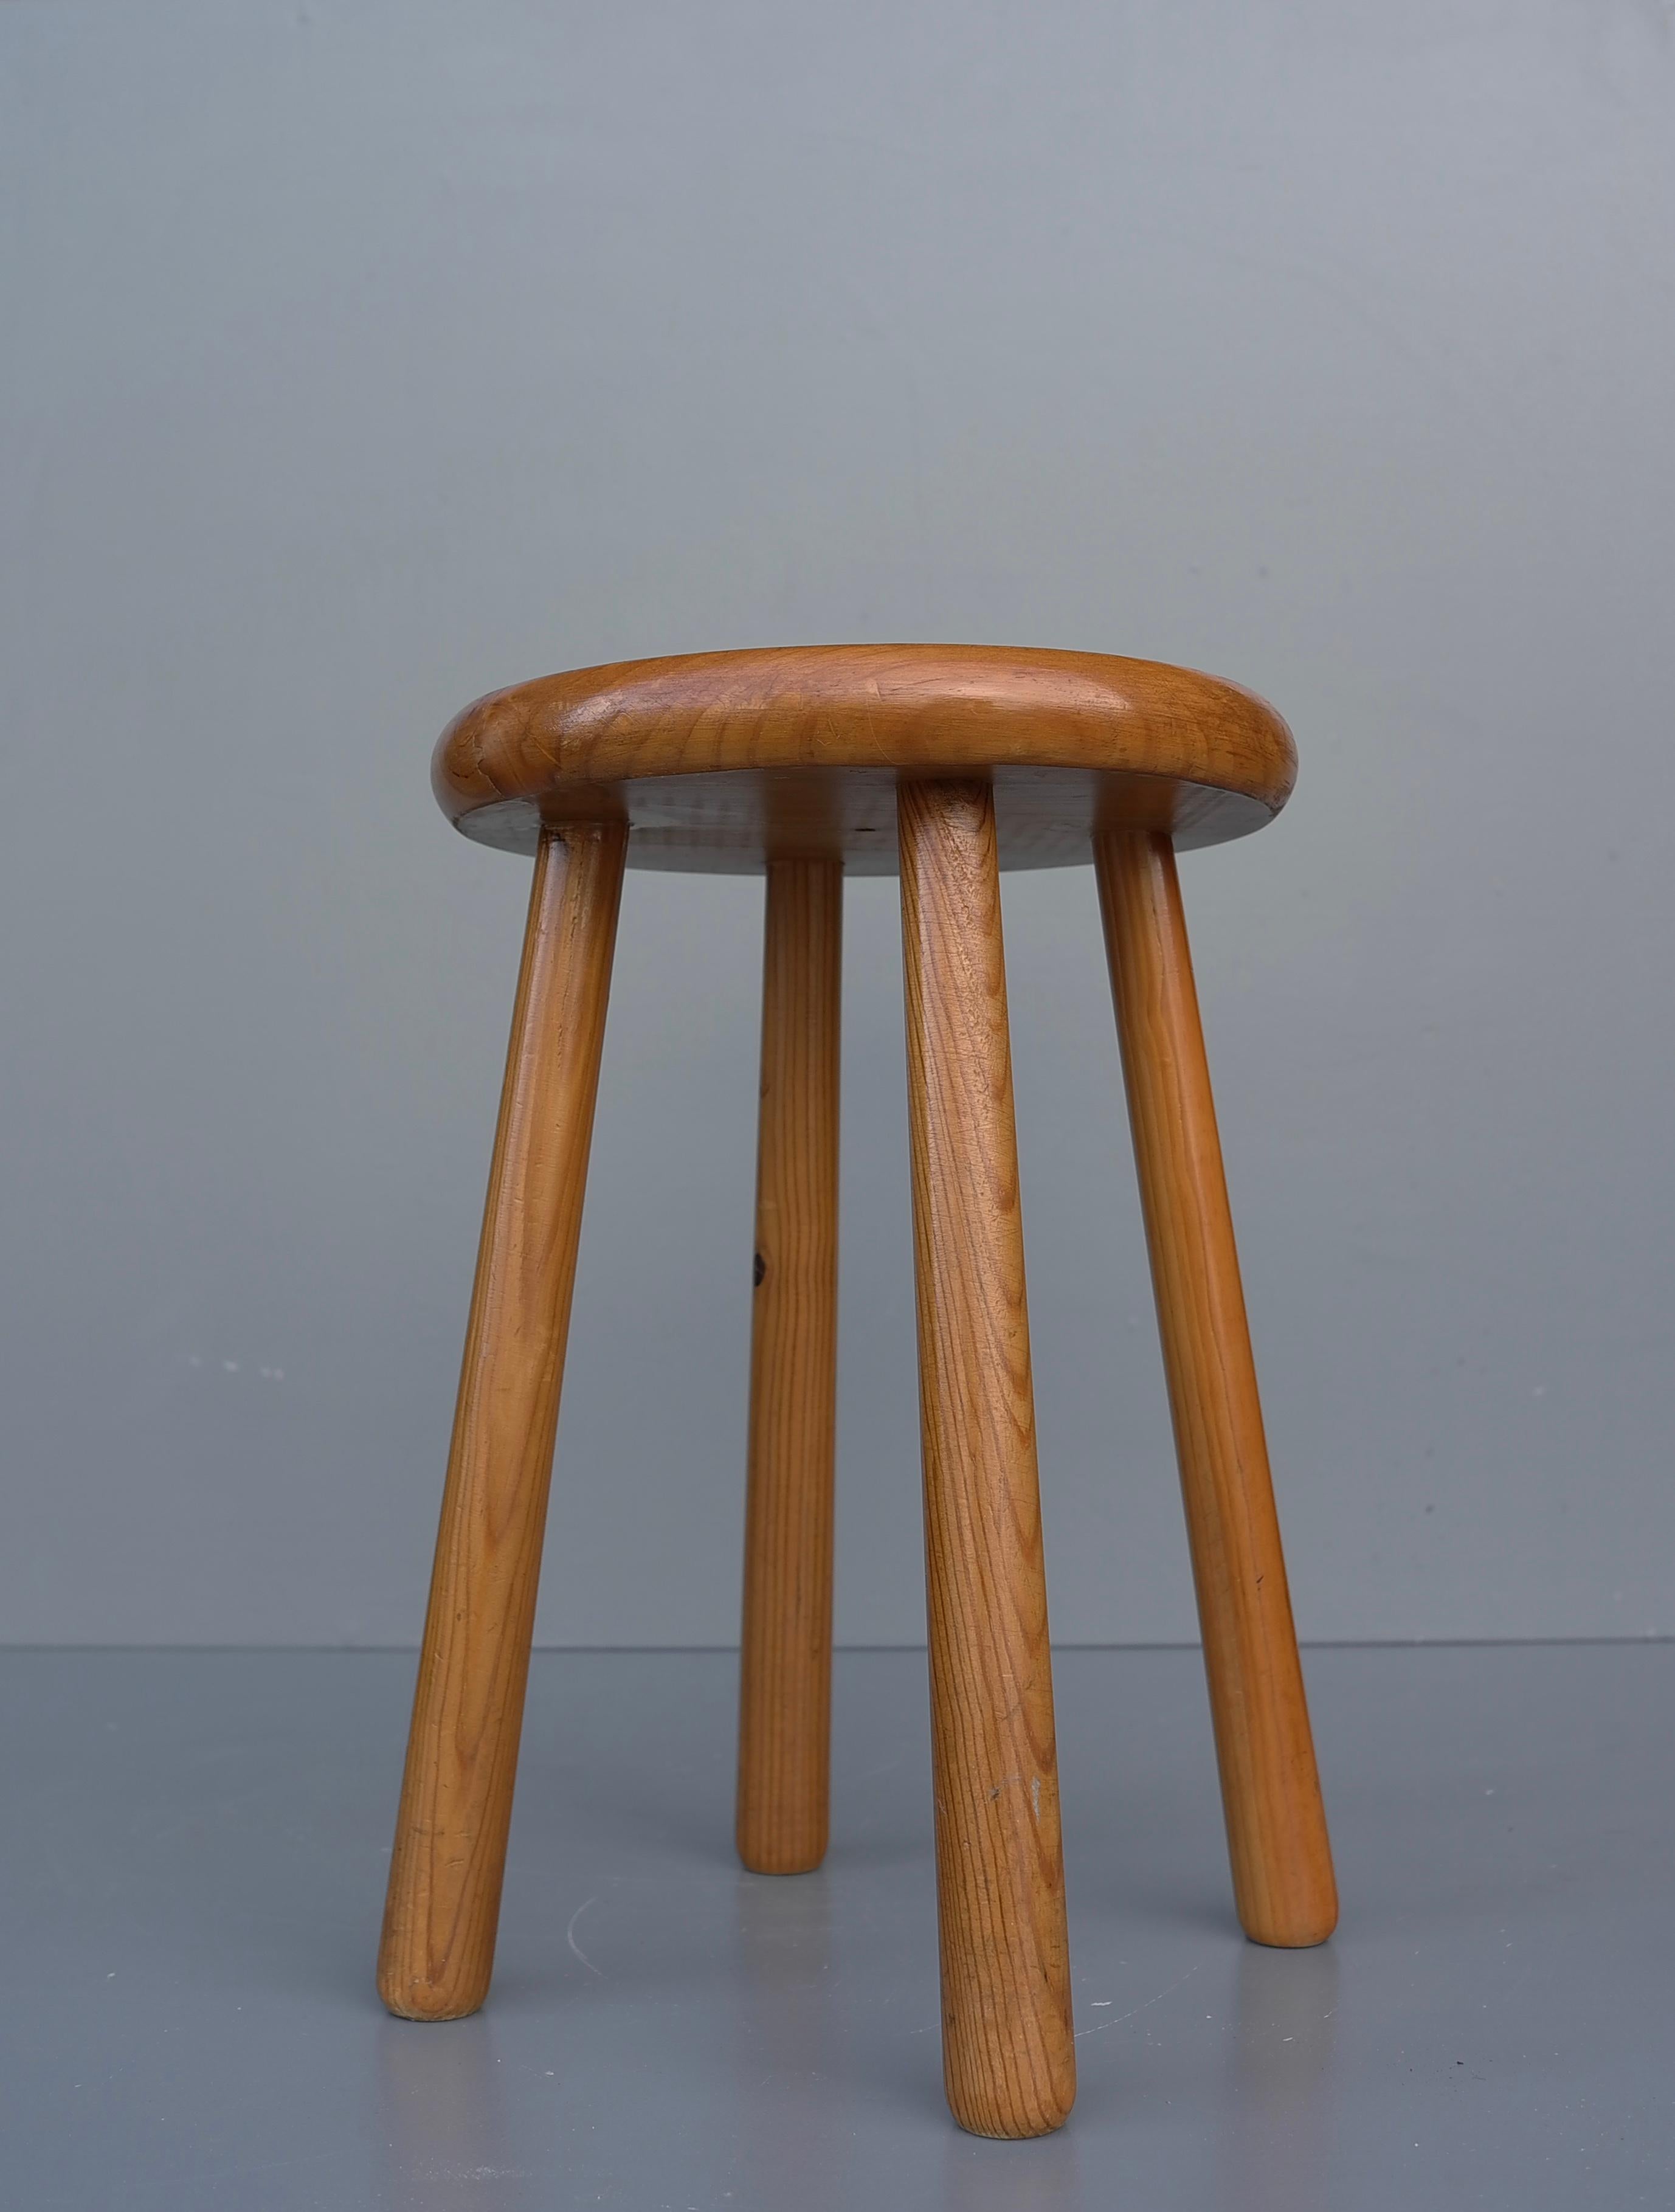 Scandinavian Mid-Century Modern solid pine stool, Sweden 1950's.